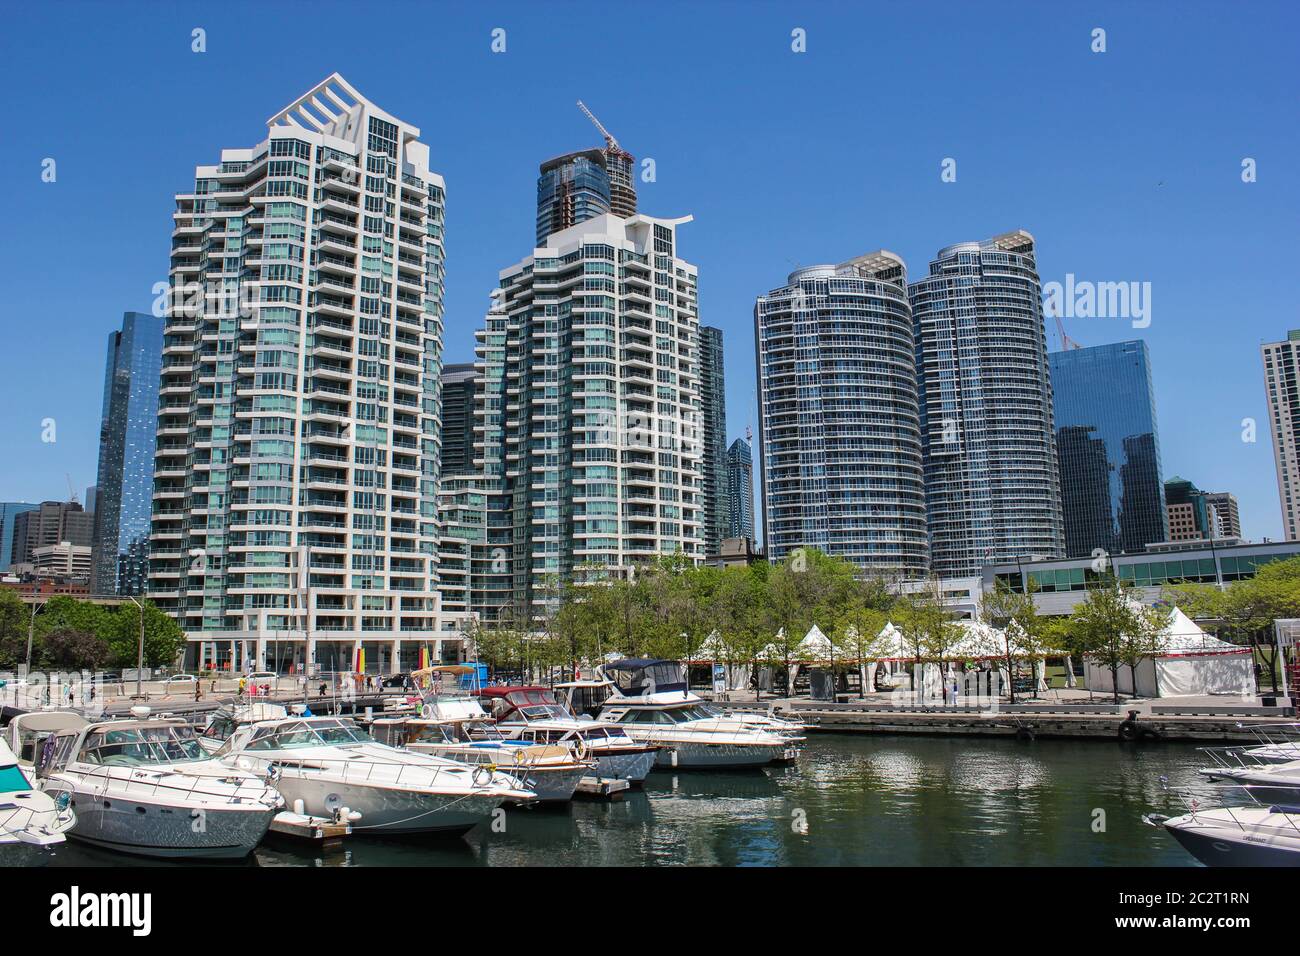 Paisaje urbano de Toronto con edificios altos y el puerto deportivo en el Lago Ontario, Ontario, Canadá Foto de stock